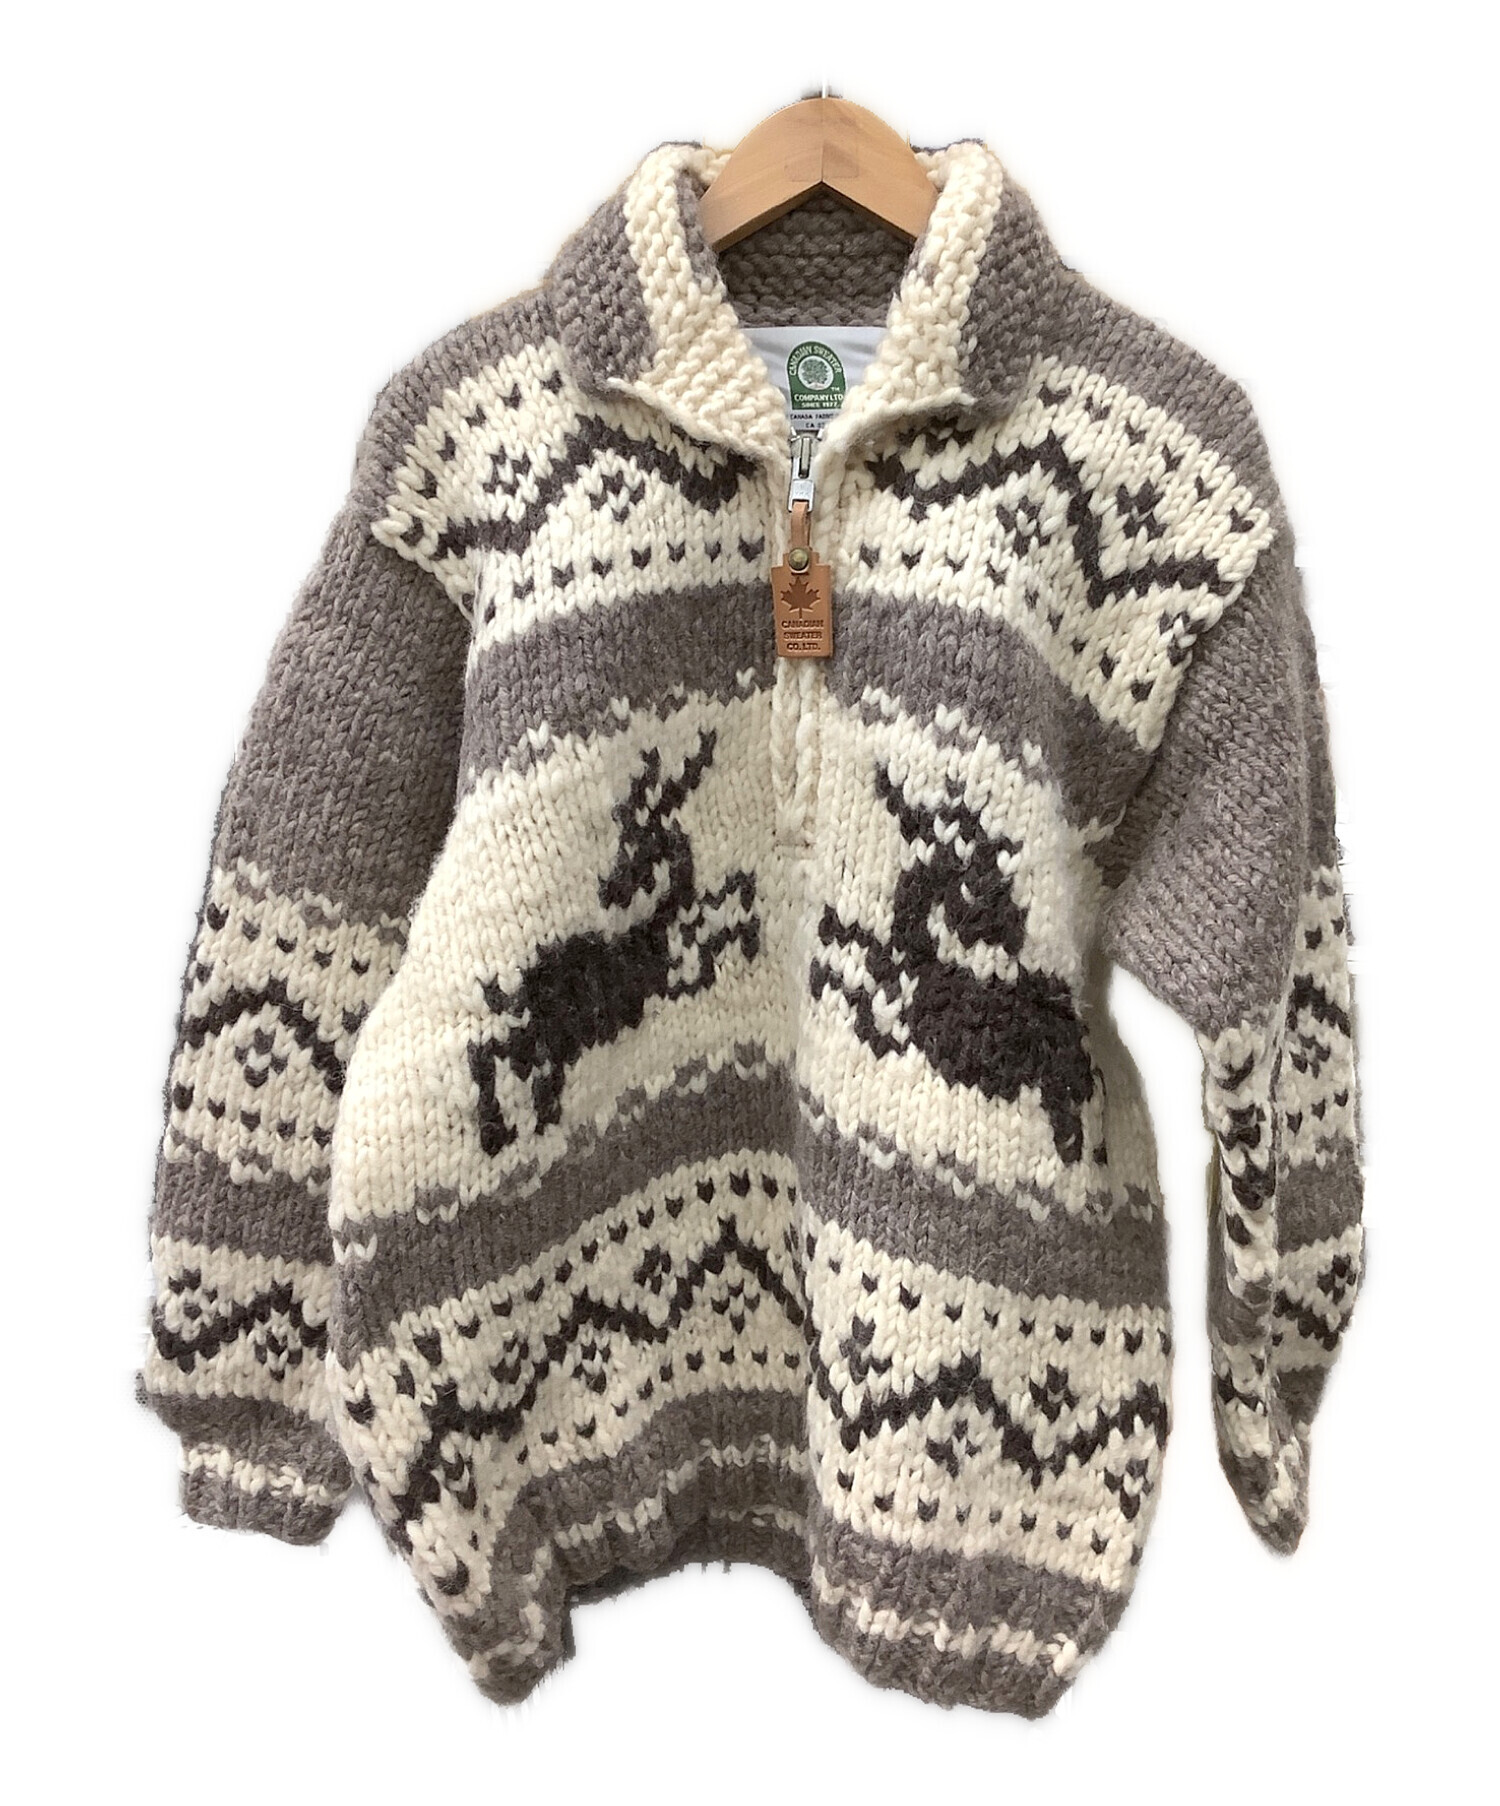 ニット/セーターカウチンセーター ウール ニット Canadian Sweater